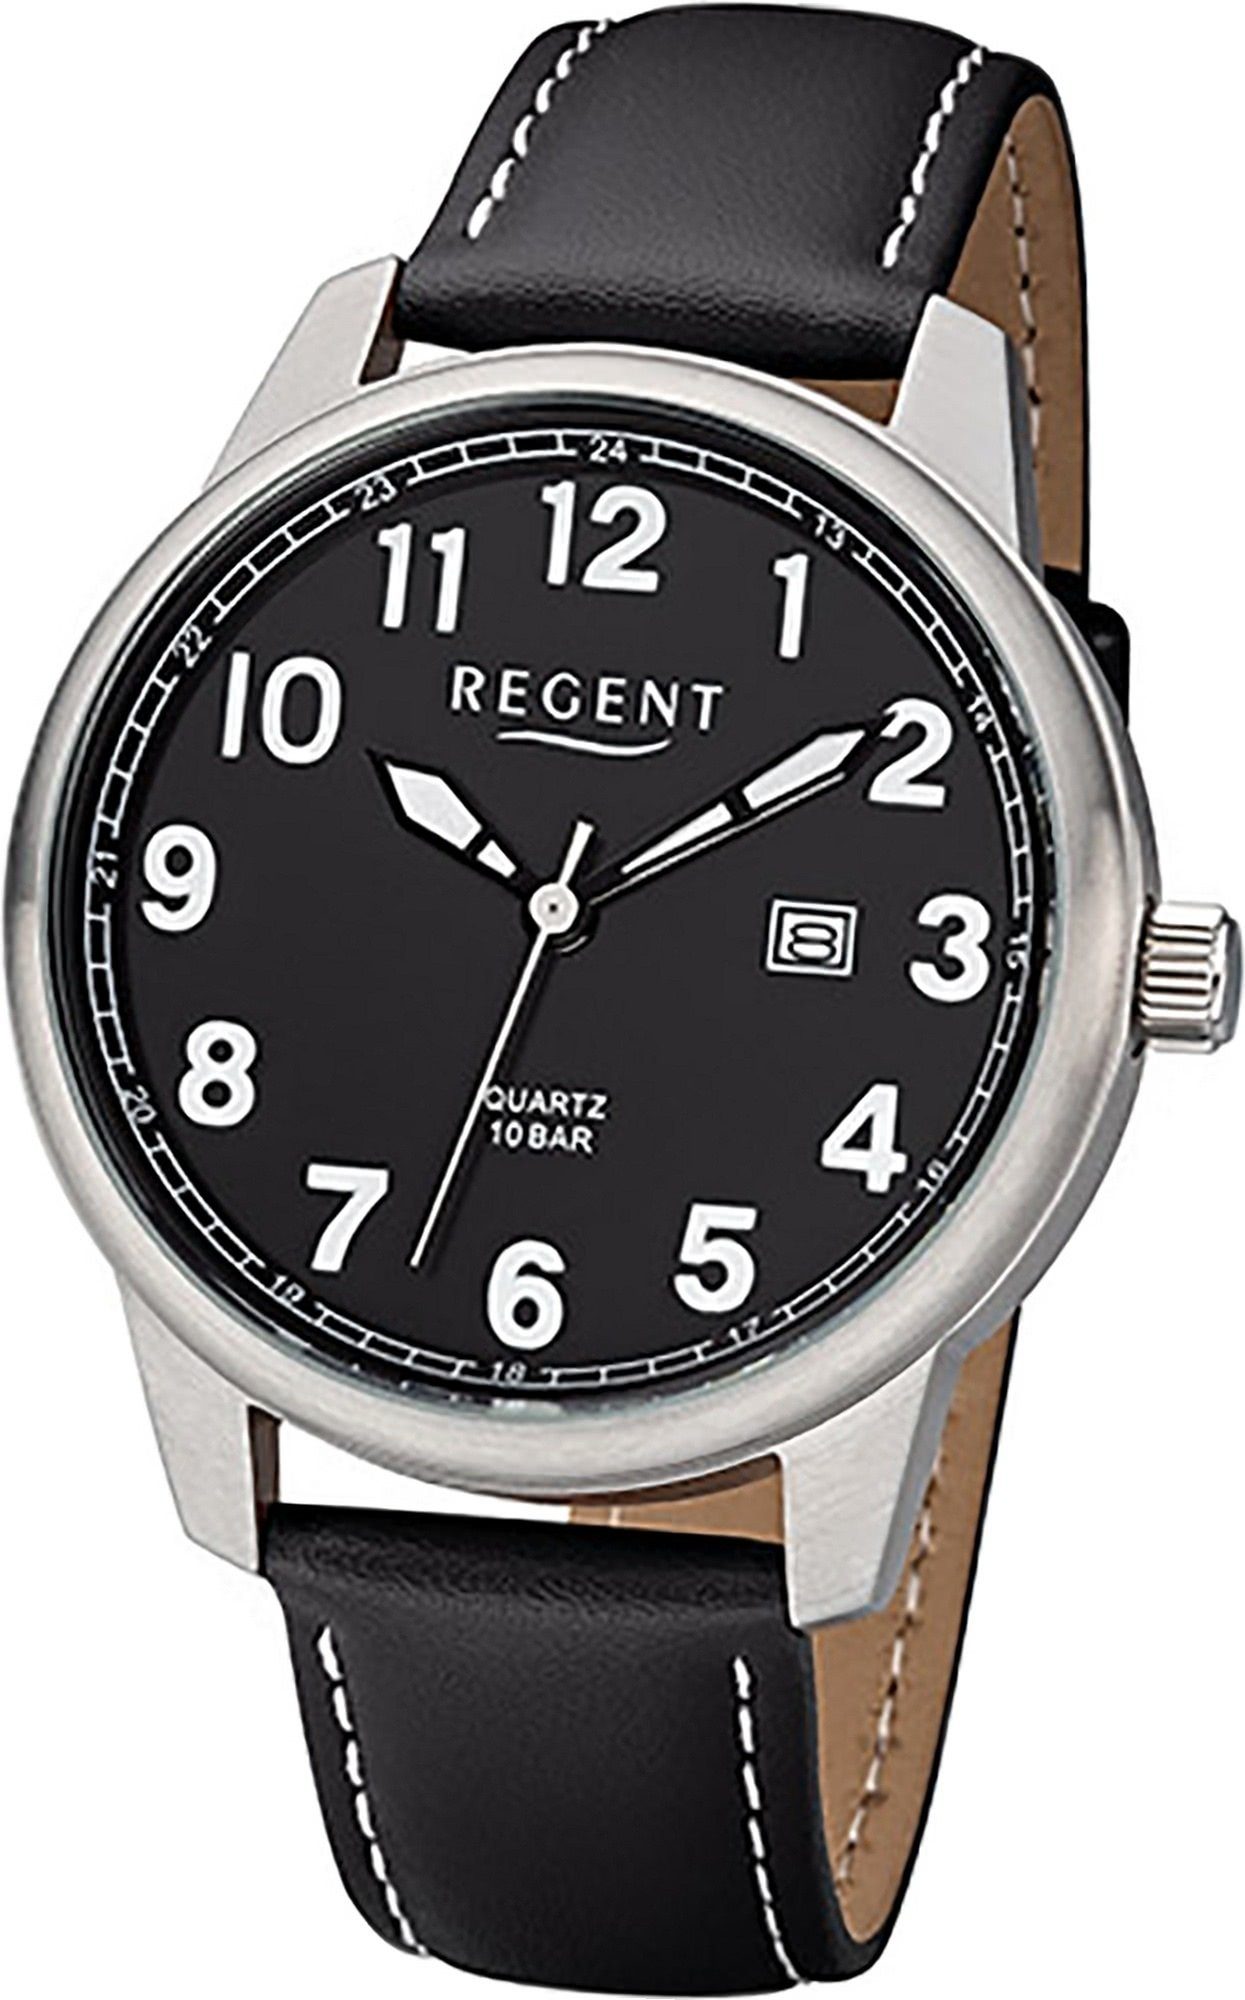 Regent Quarzuhr Regent Leder Herren Uhr F-1238 Analog, Herrenuhr Lederarmband schwarz, rundes Gehäuse, groß (ca. 41mm)